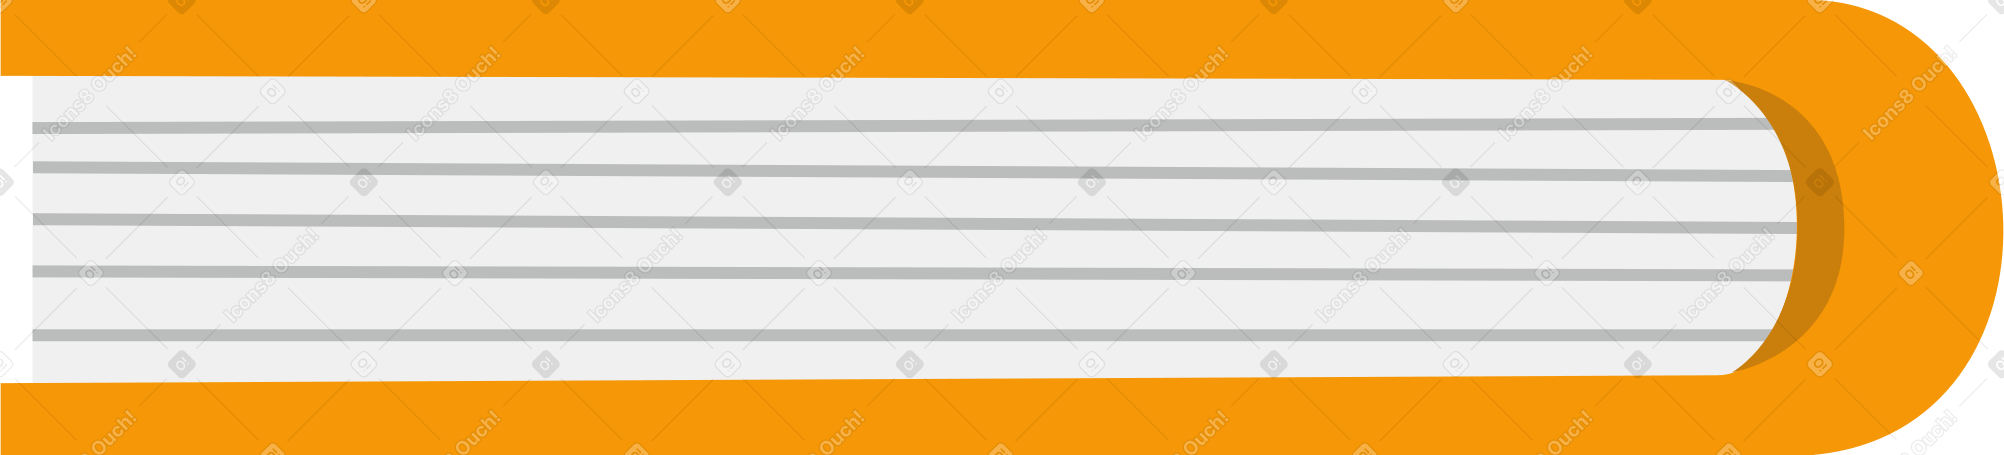 orange bound book Illustration in PNG, SVG